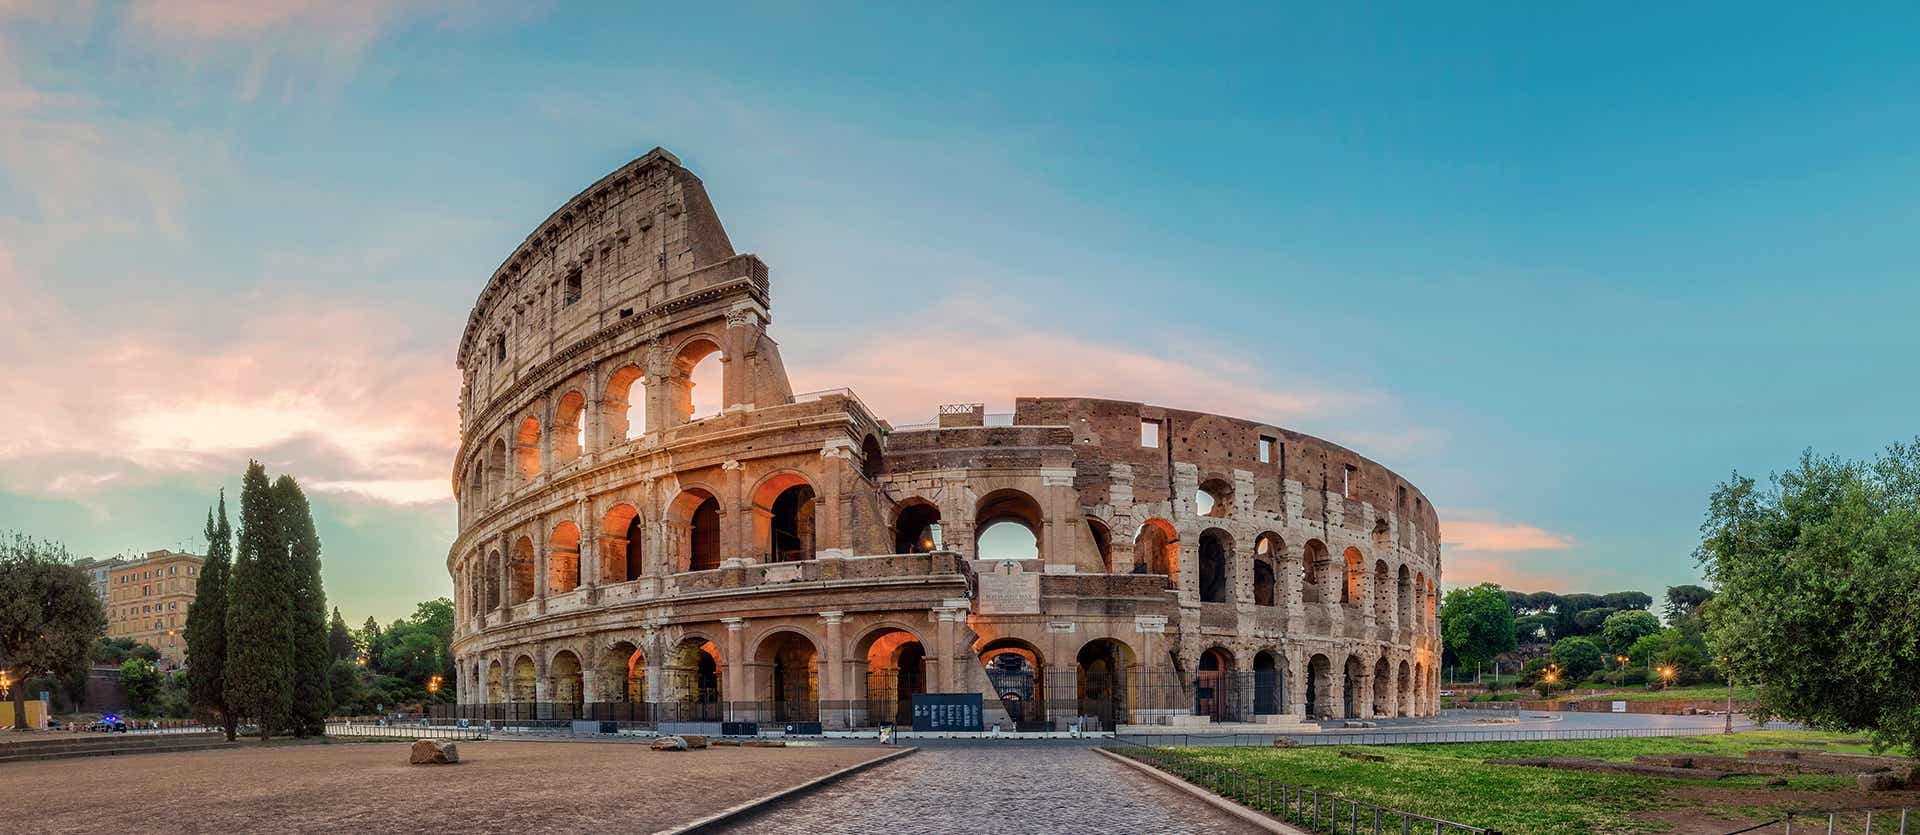 Coliseo <span class="iconos separador"></span> Roma <span class="iconos separador"></span> Italia